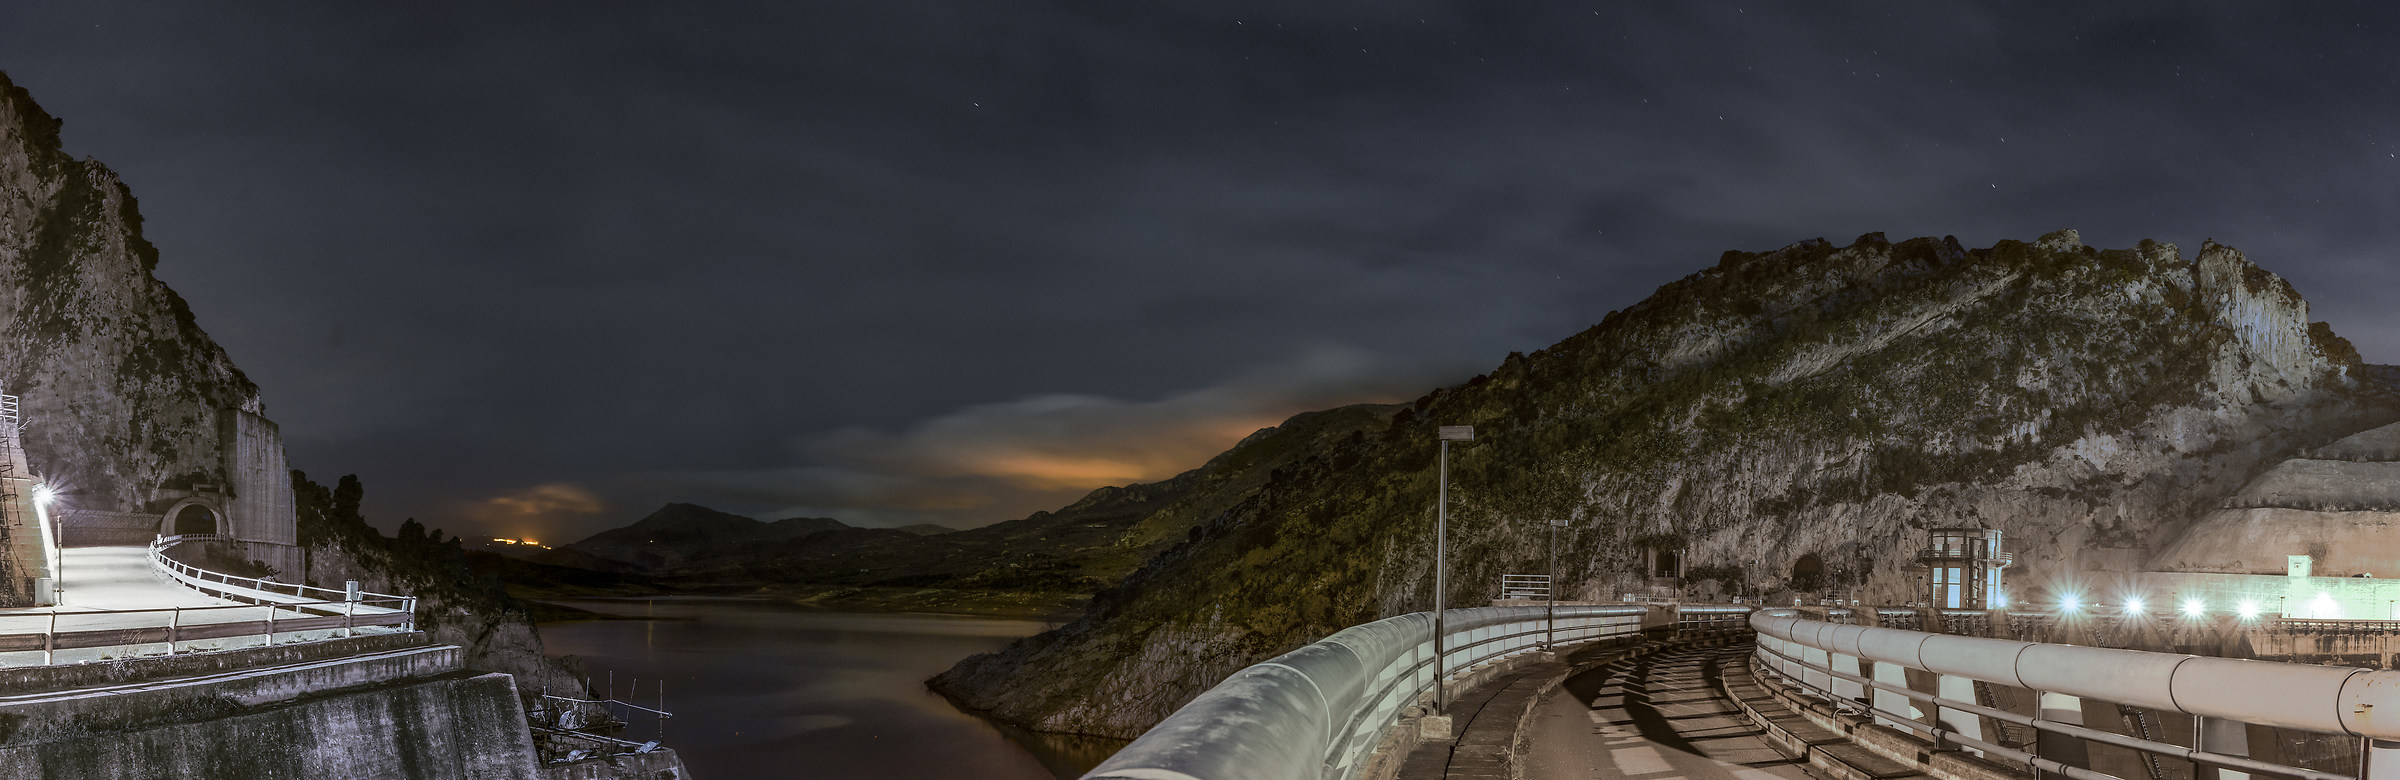 Una notte alla diga - A night at the dam...